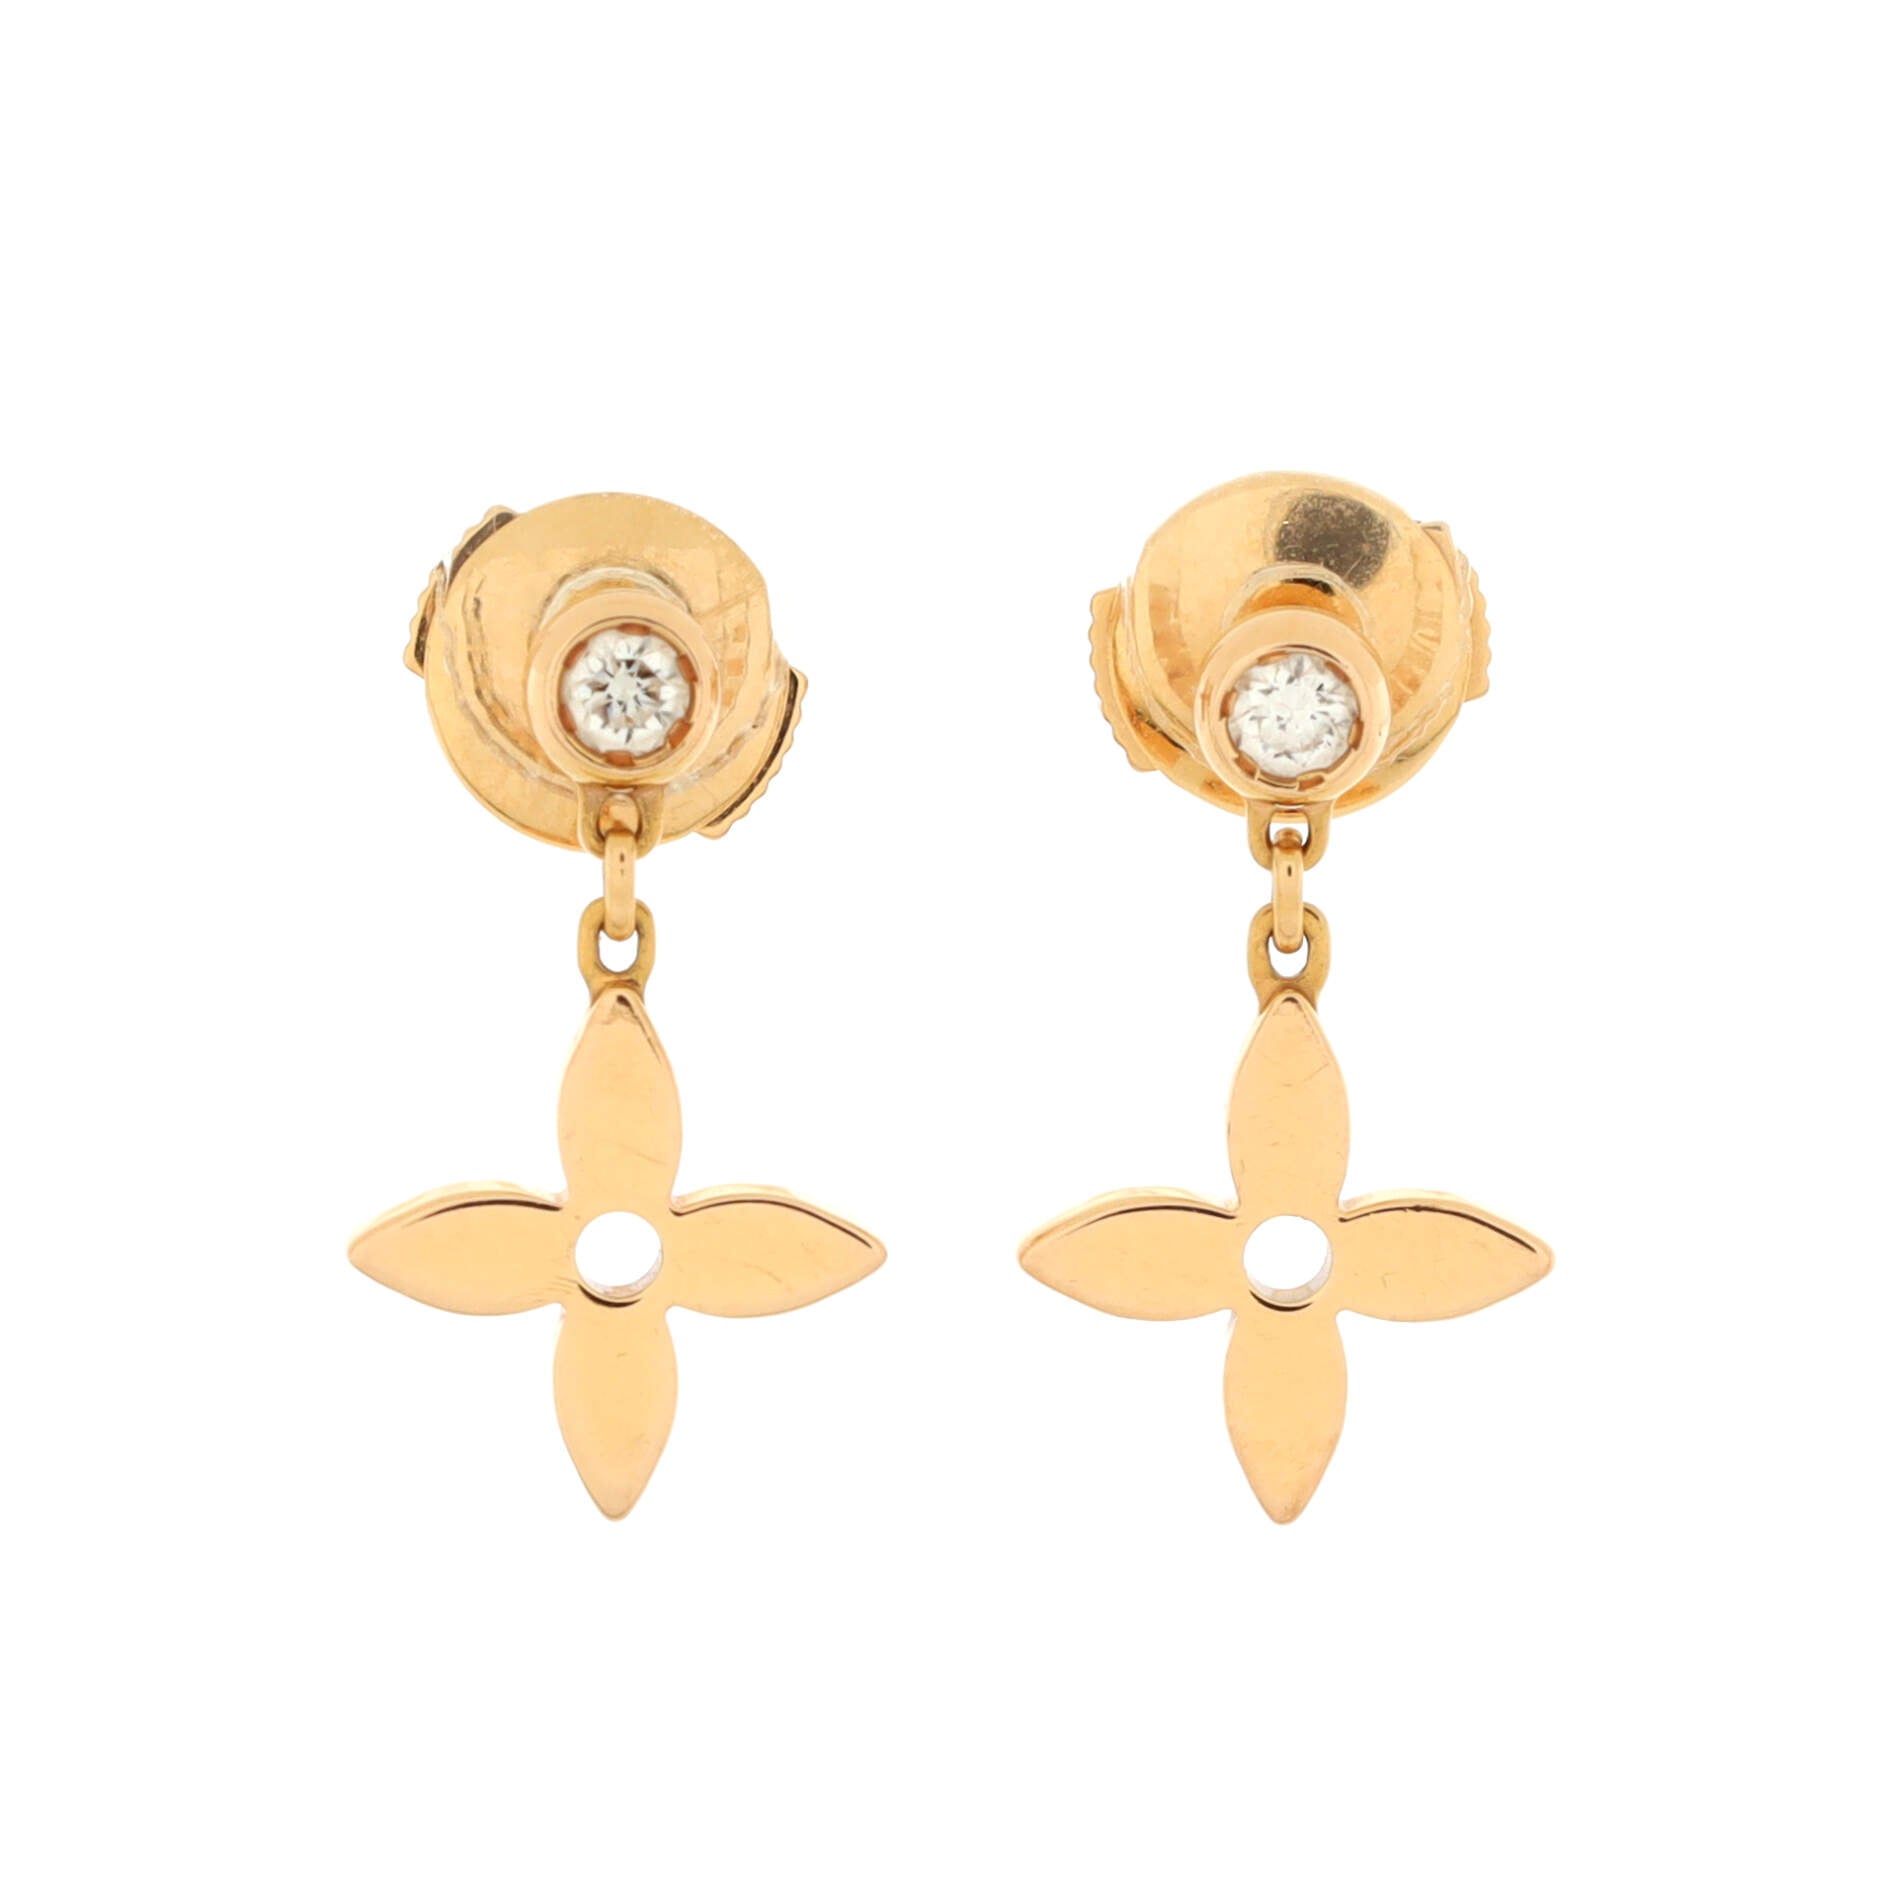 SILI Preorder - New LV blooming earrings พร้อมส่ง ราคา 22,000